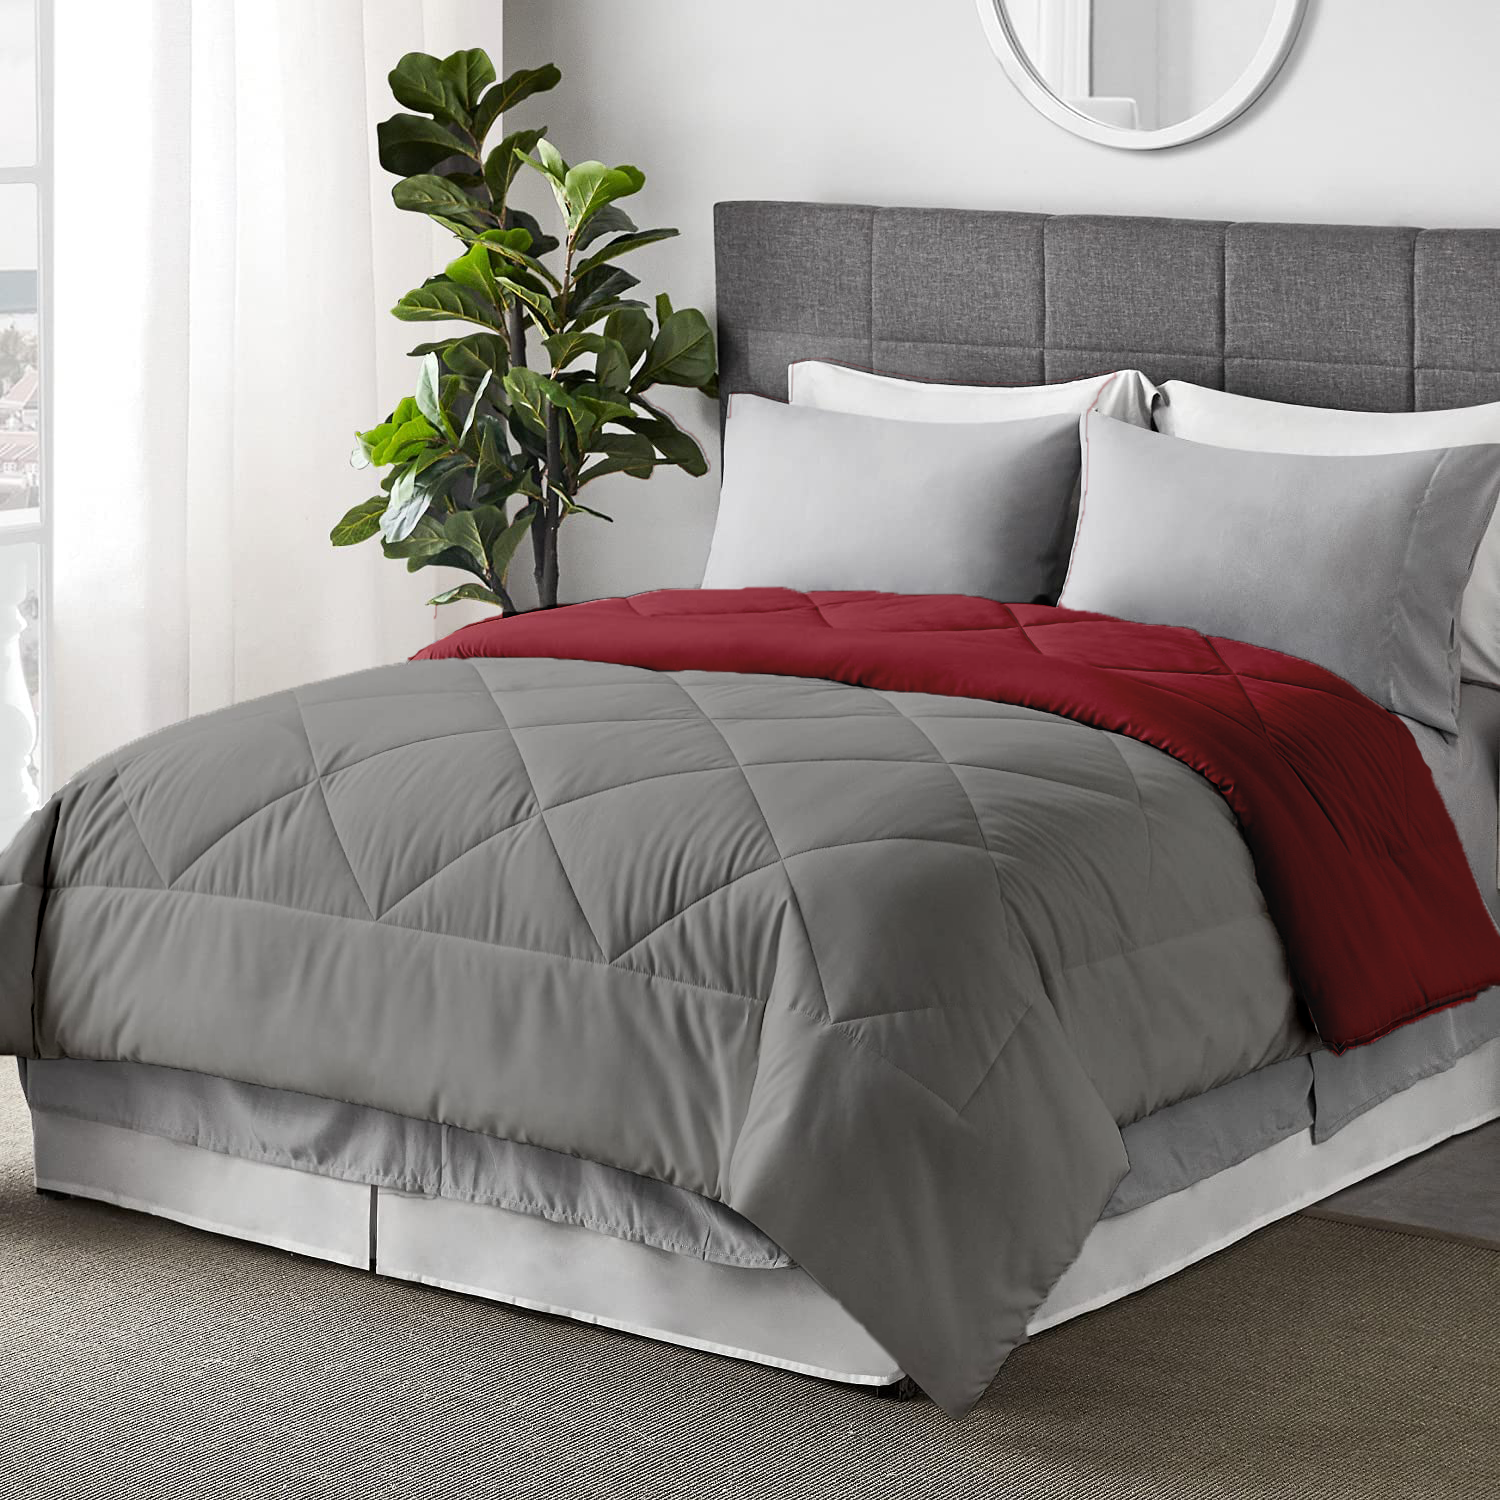  100 GSM Soft AC Comforter Hotel Quality